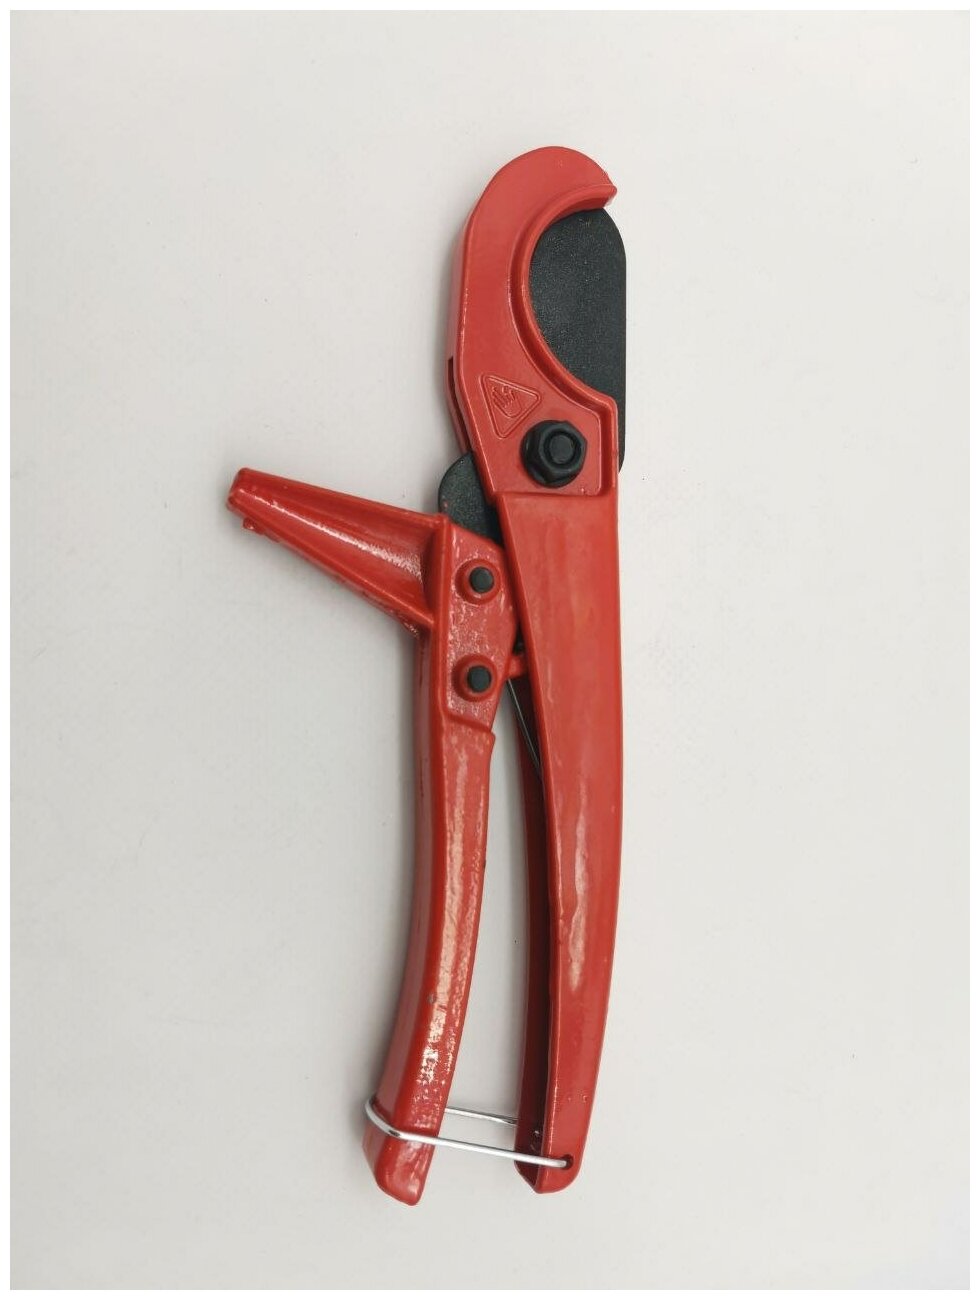 Ножницы для металлопластиковых и PPR труб 16-32 мм. ViEiR арт. VER816